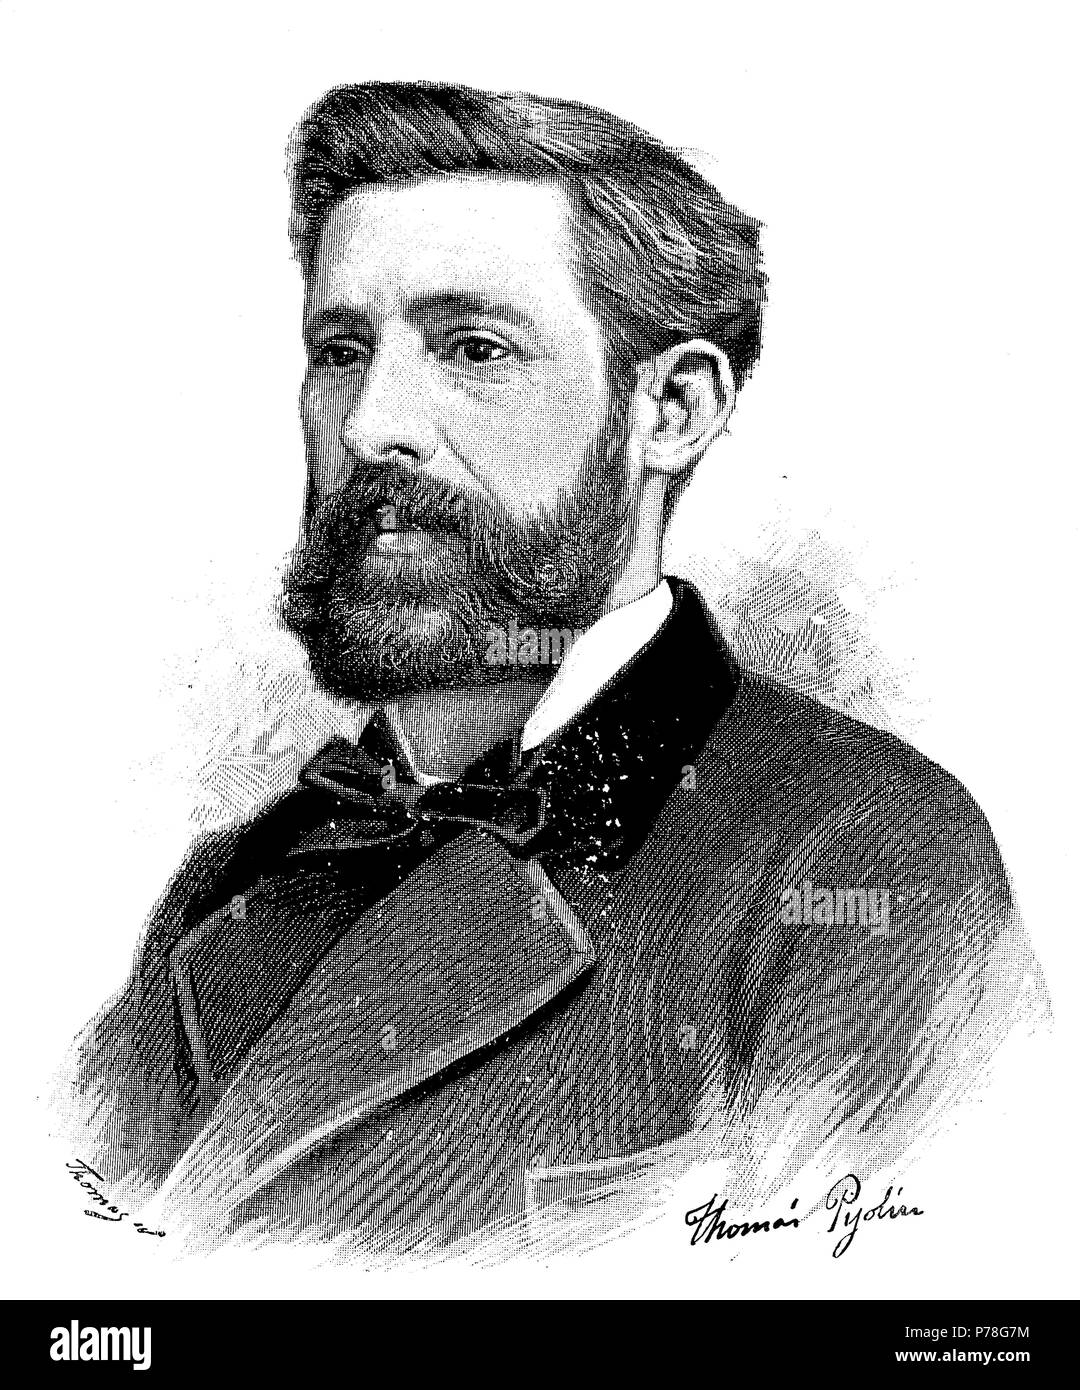 Josep Pleyan de Porta (1841-1891), historiador y poeta catalán. Grabado de 1891. Stock Photo